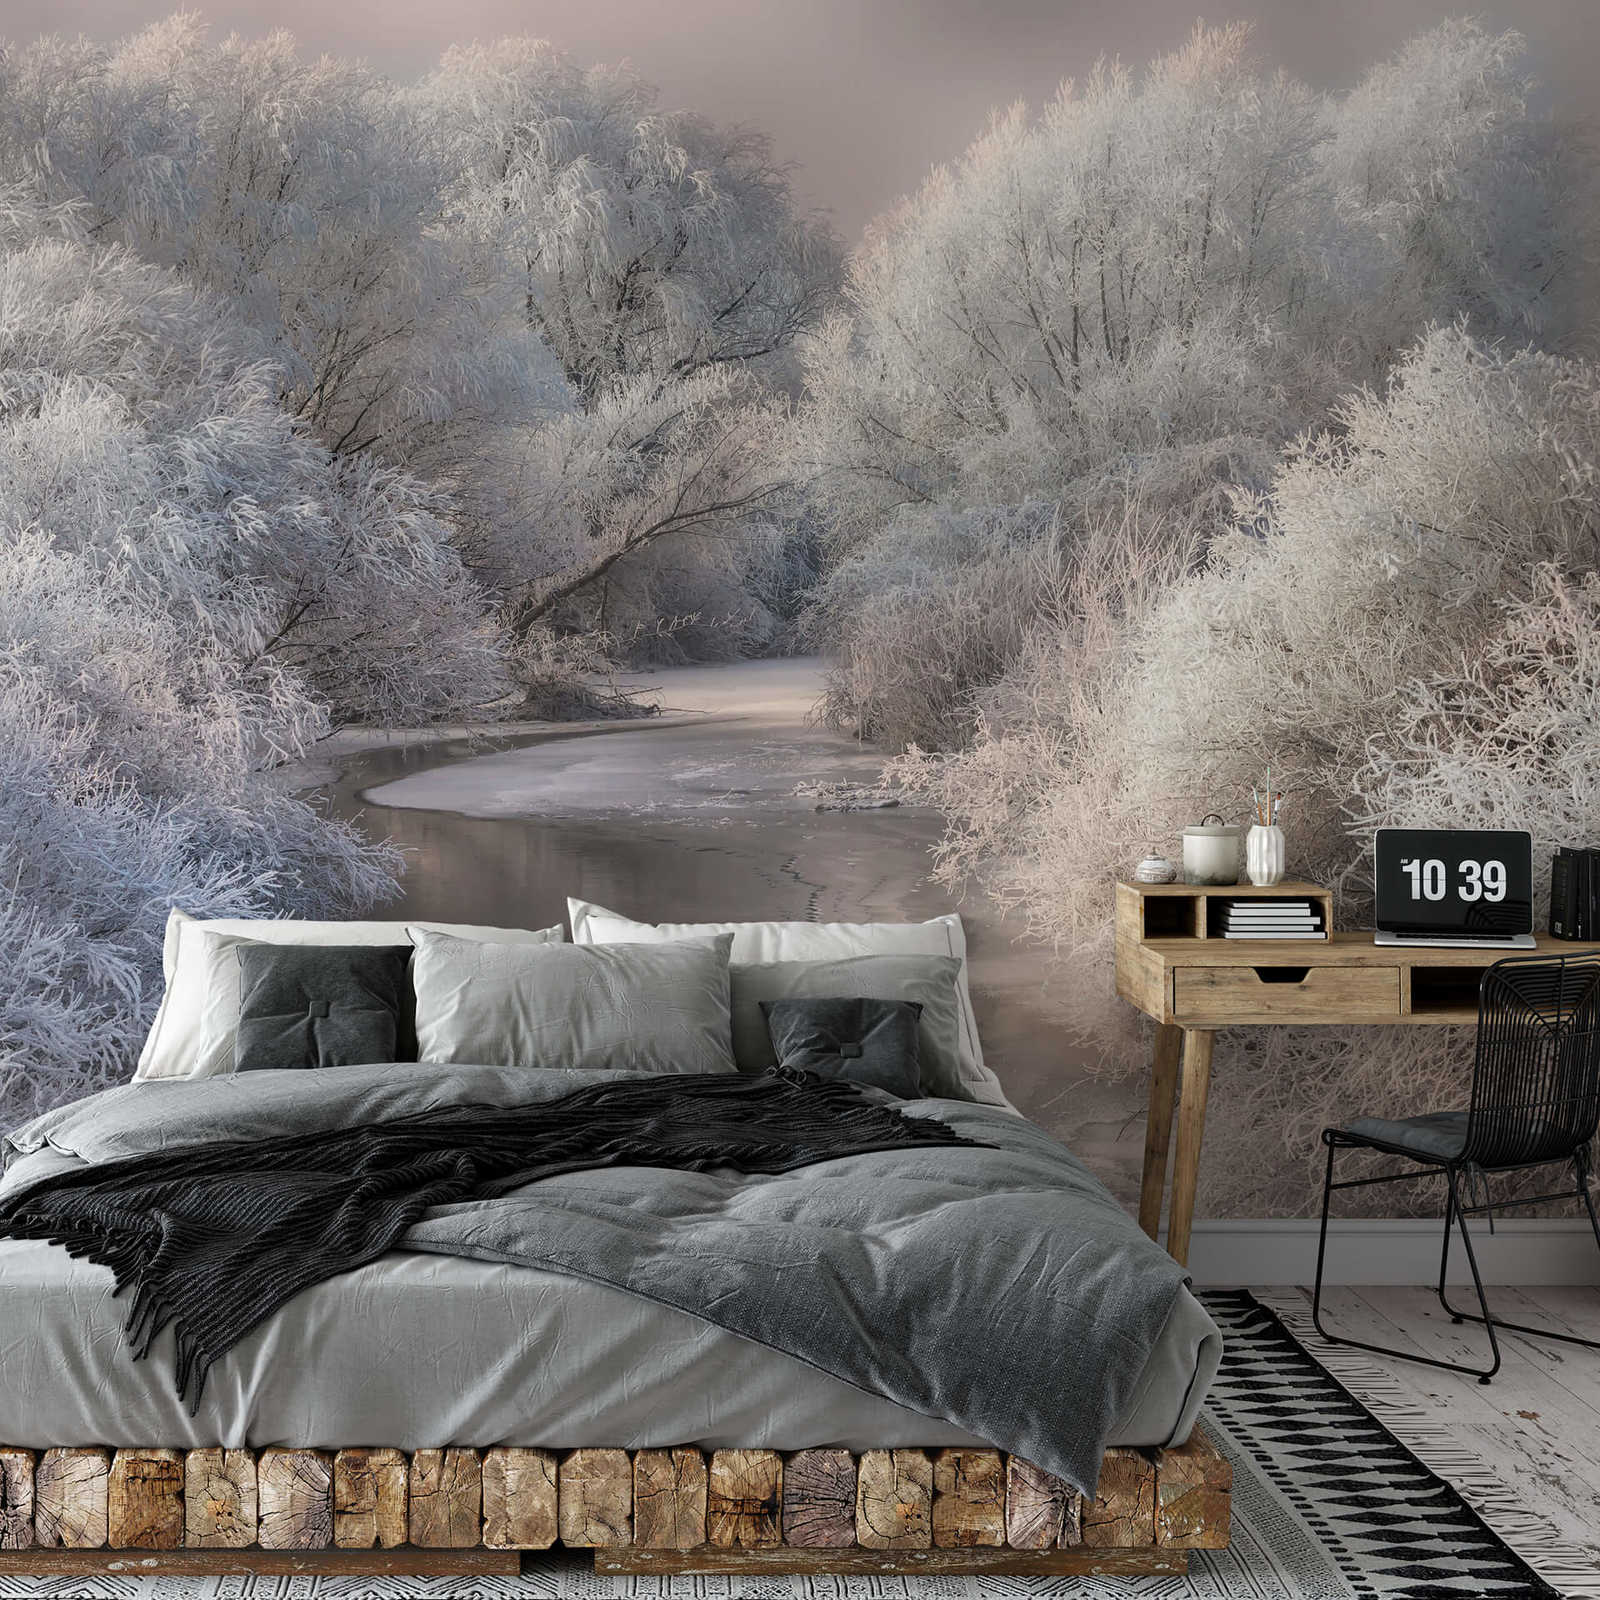             Muurschildering bevroren bos met rivier - Wit, Grijs
        